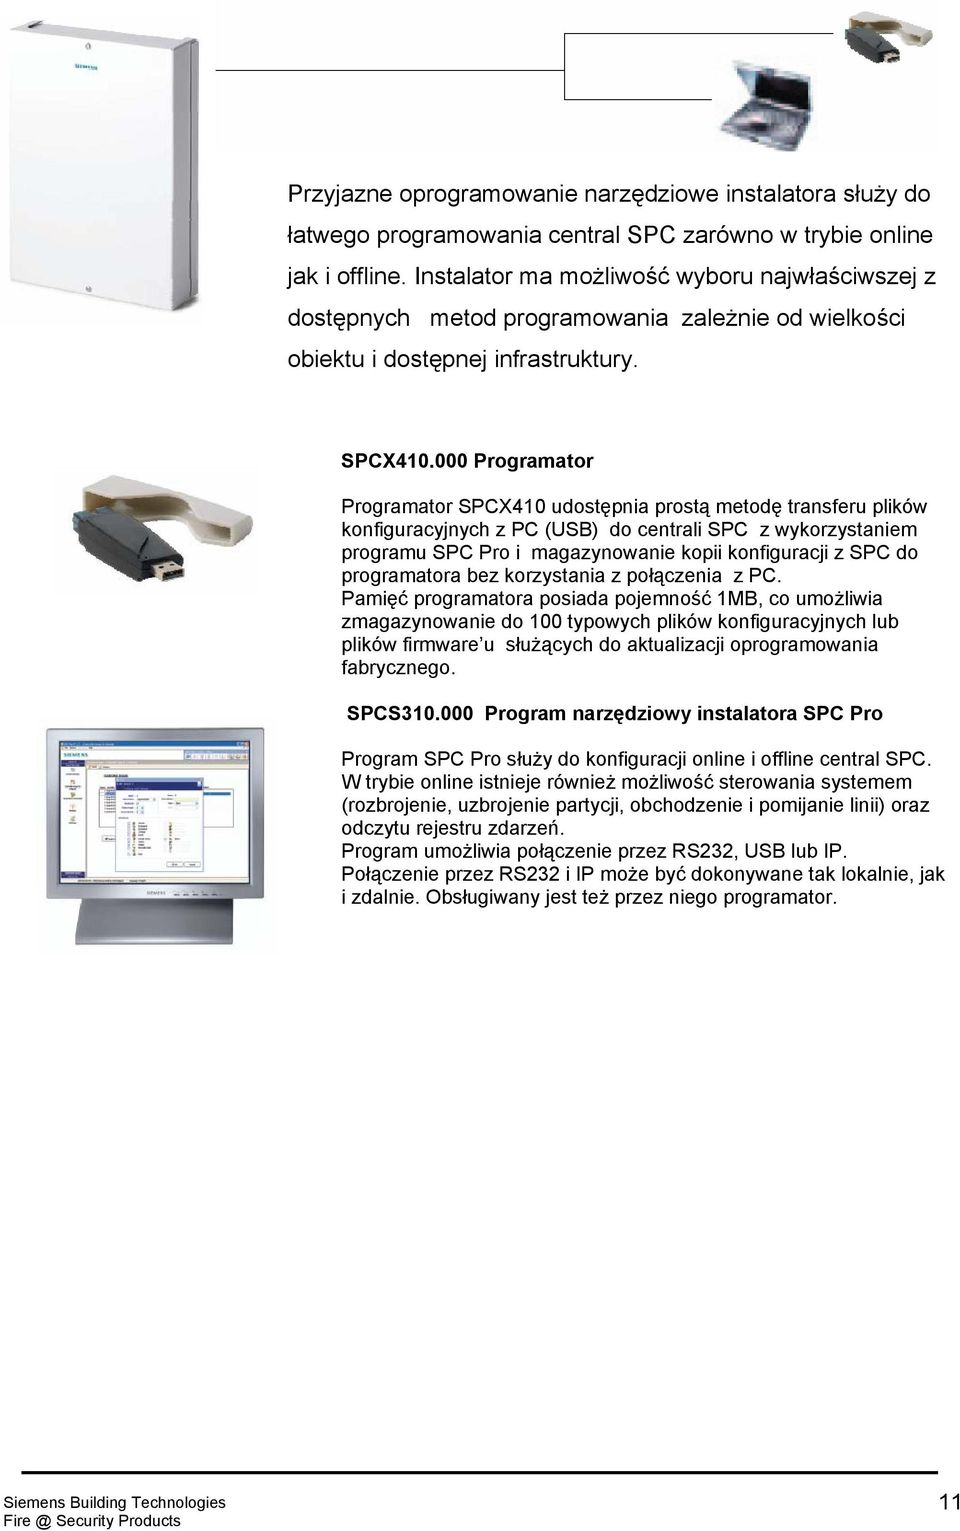 000 Programator Programator SPCX410 udostępnia prostą metodę transferu plików konfiguracyjnych z PC (USB) do centrali SPC z wykorzystaniem programu SPC Pro i magazynowanie kopii konfiguracji z SPC do